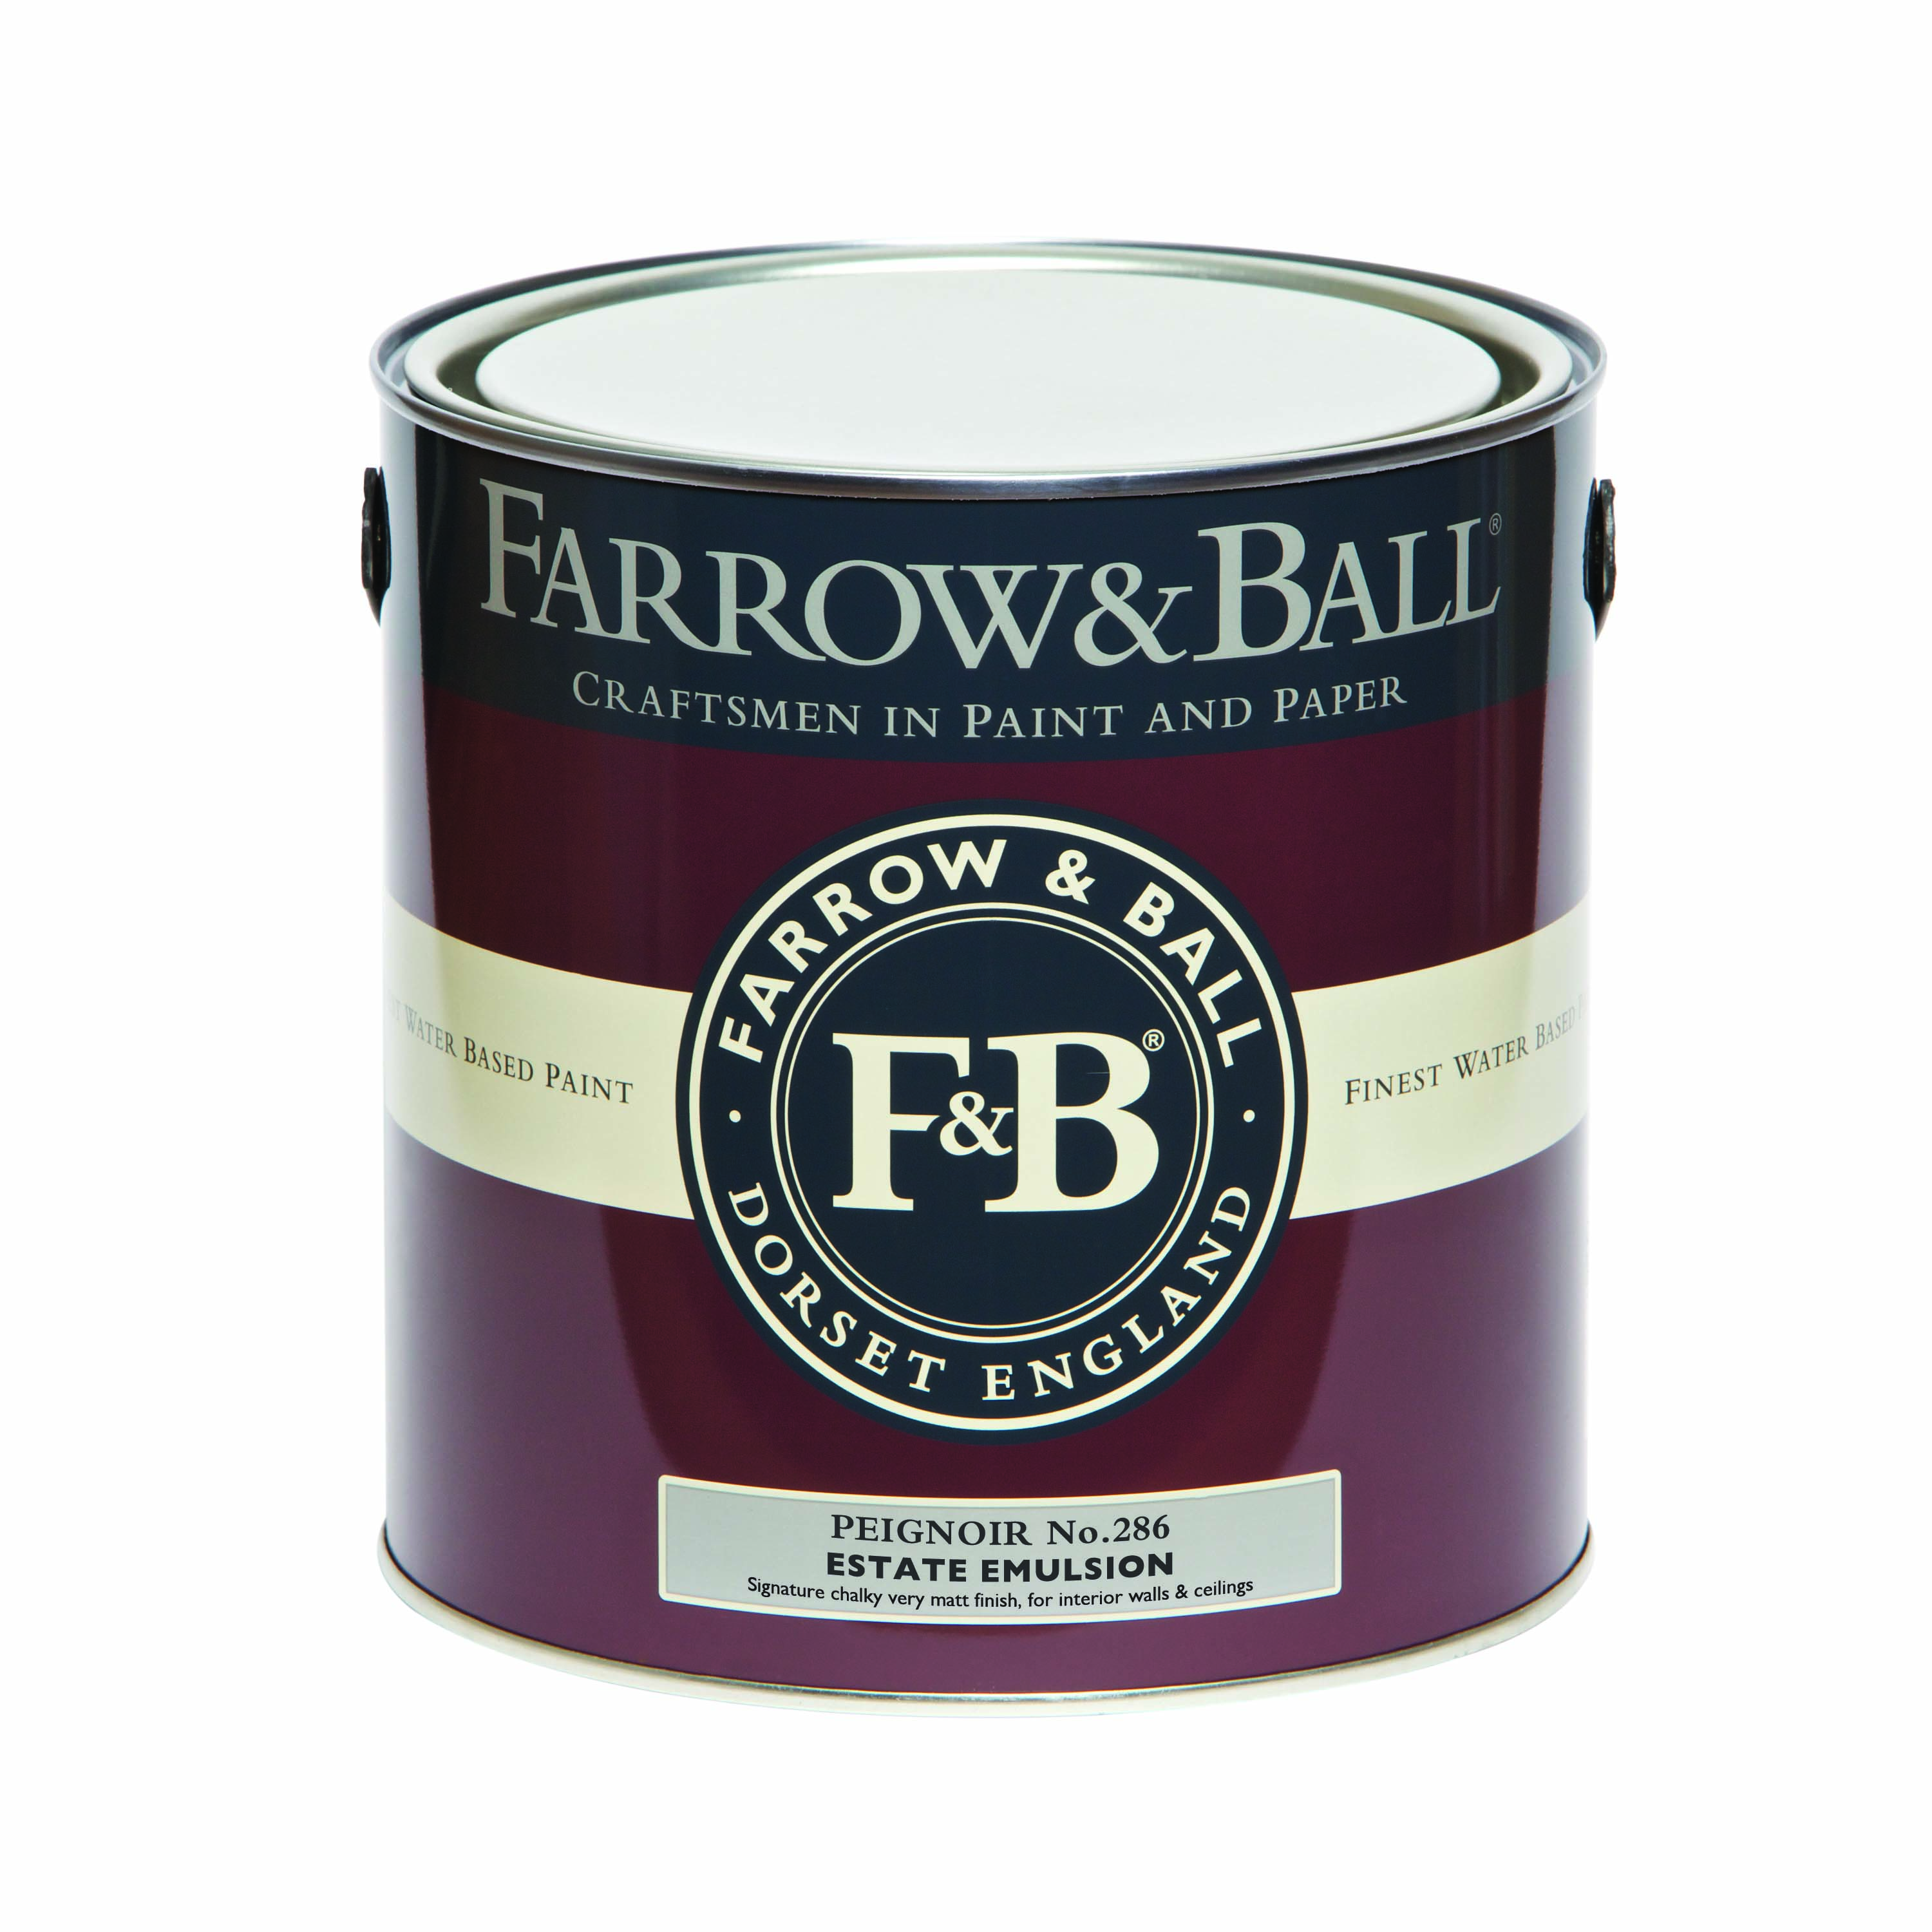 Farrow & Ball Peignoir